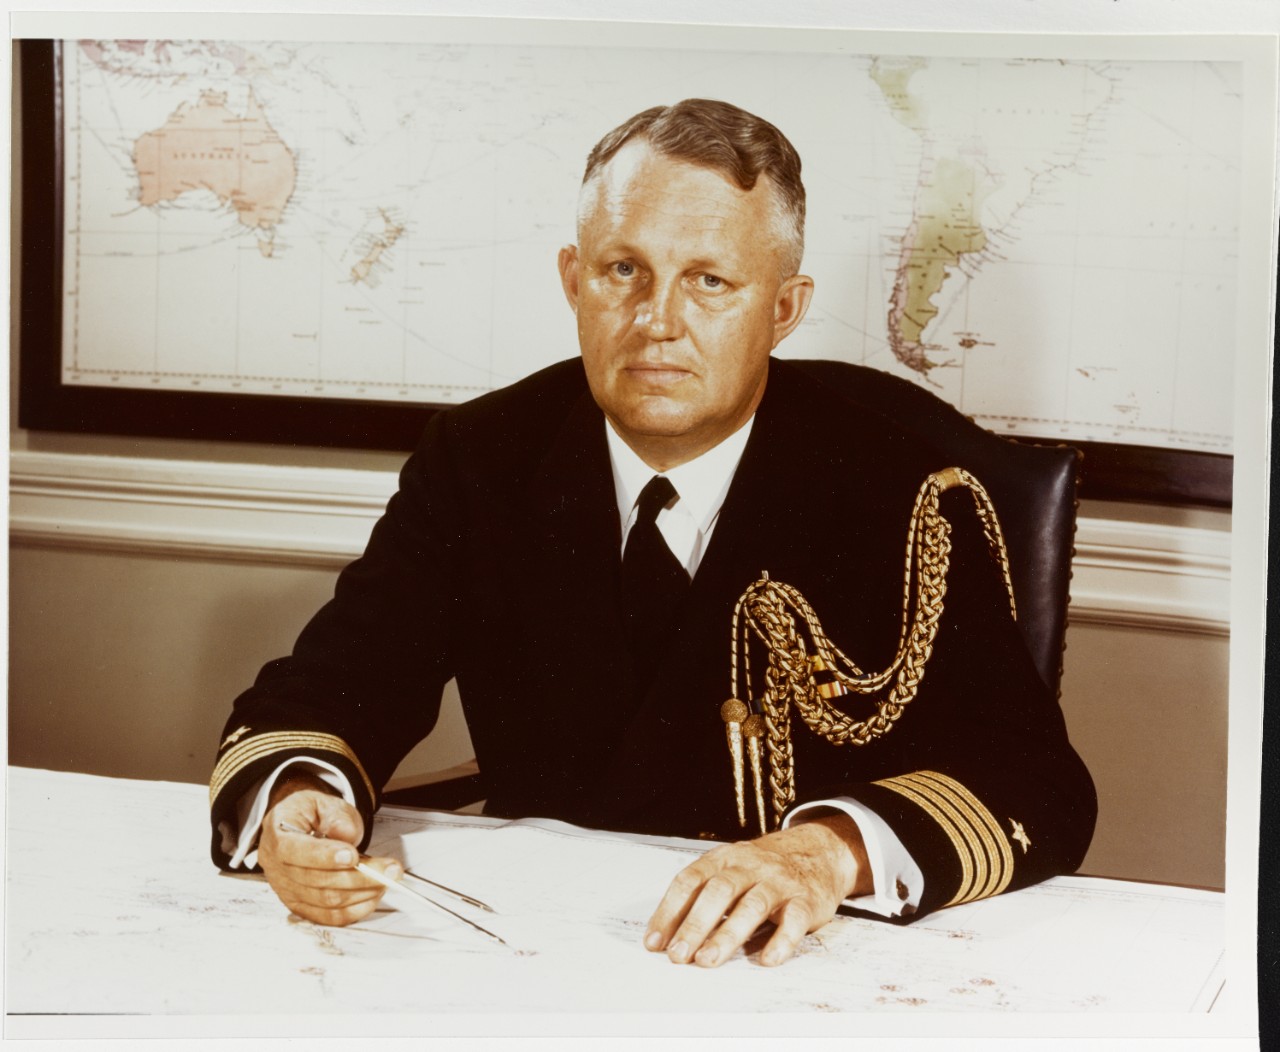 Captain Frank E. Beatty, USN